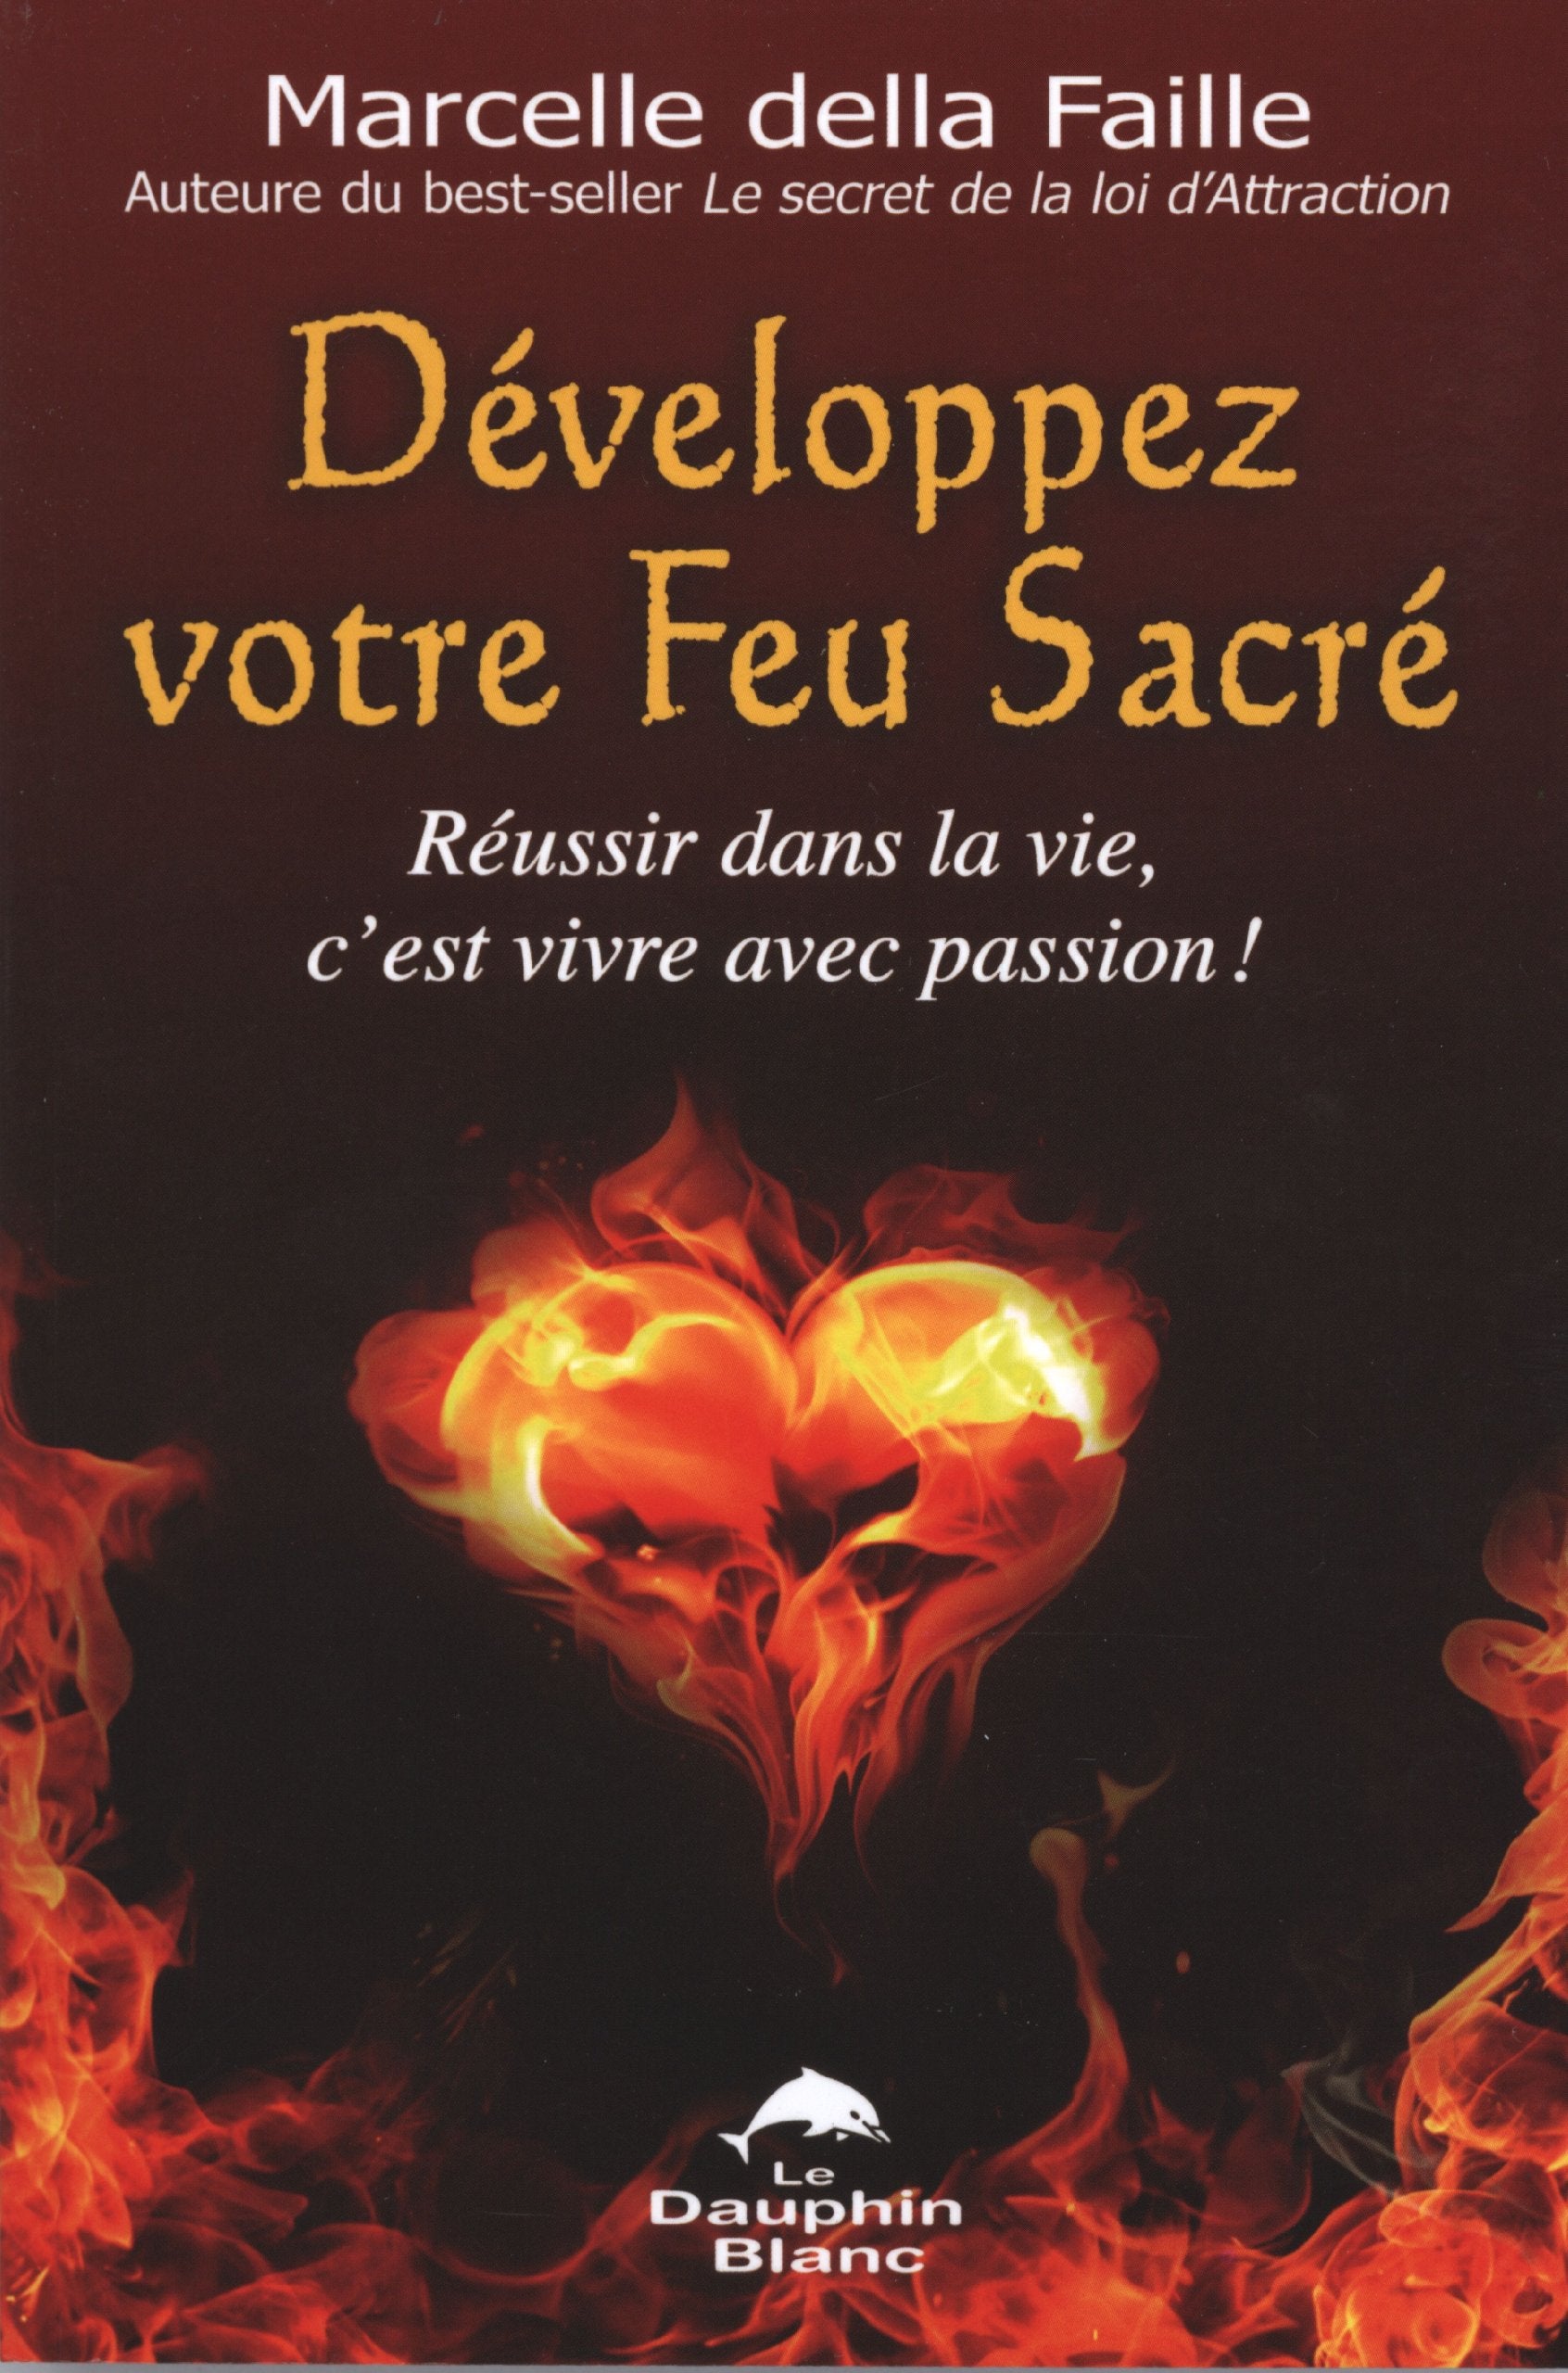 Livre ISBN 289436329X Développez votre feu sacré : Réussir dans la vie, c'est vivre avec passion ! (Marcelle della Faille)